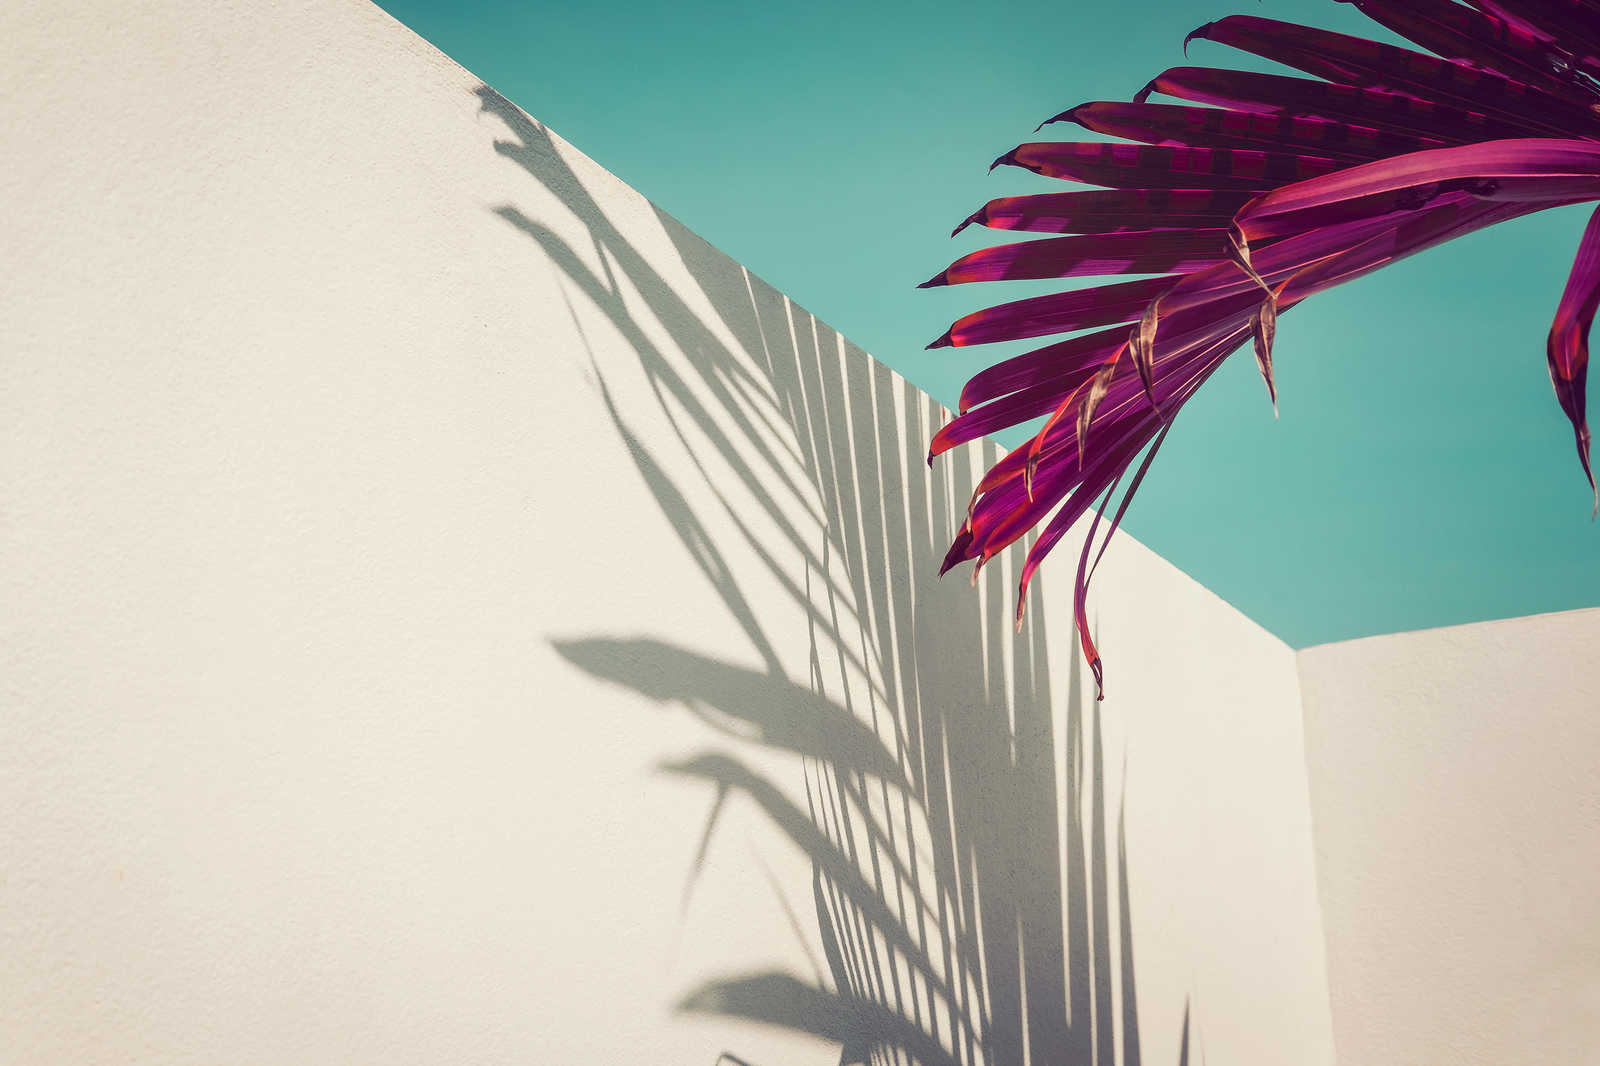             Leinwandbild mit Palmblatt und Schatten an Betonwand – 0,90 m x 0,60 m
        